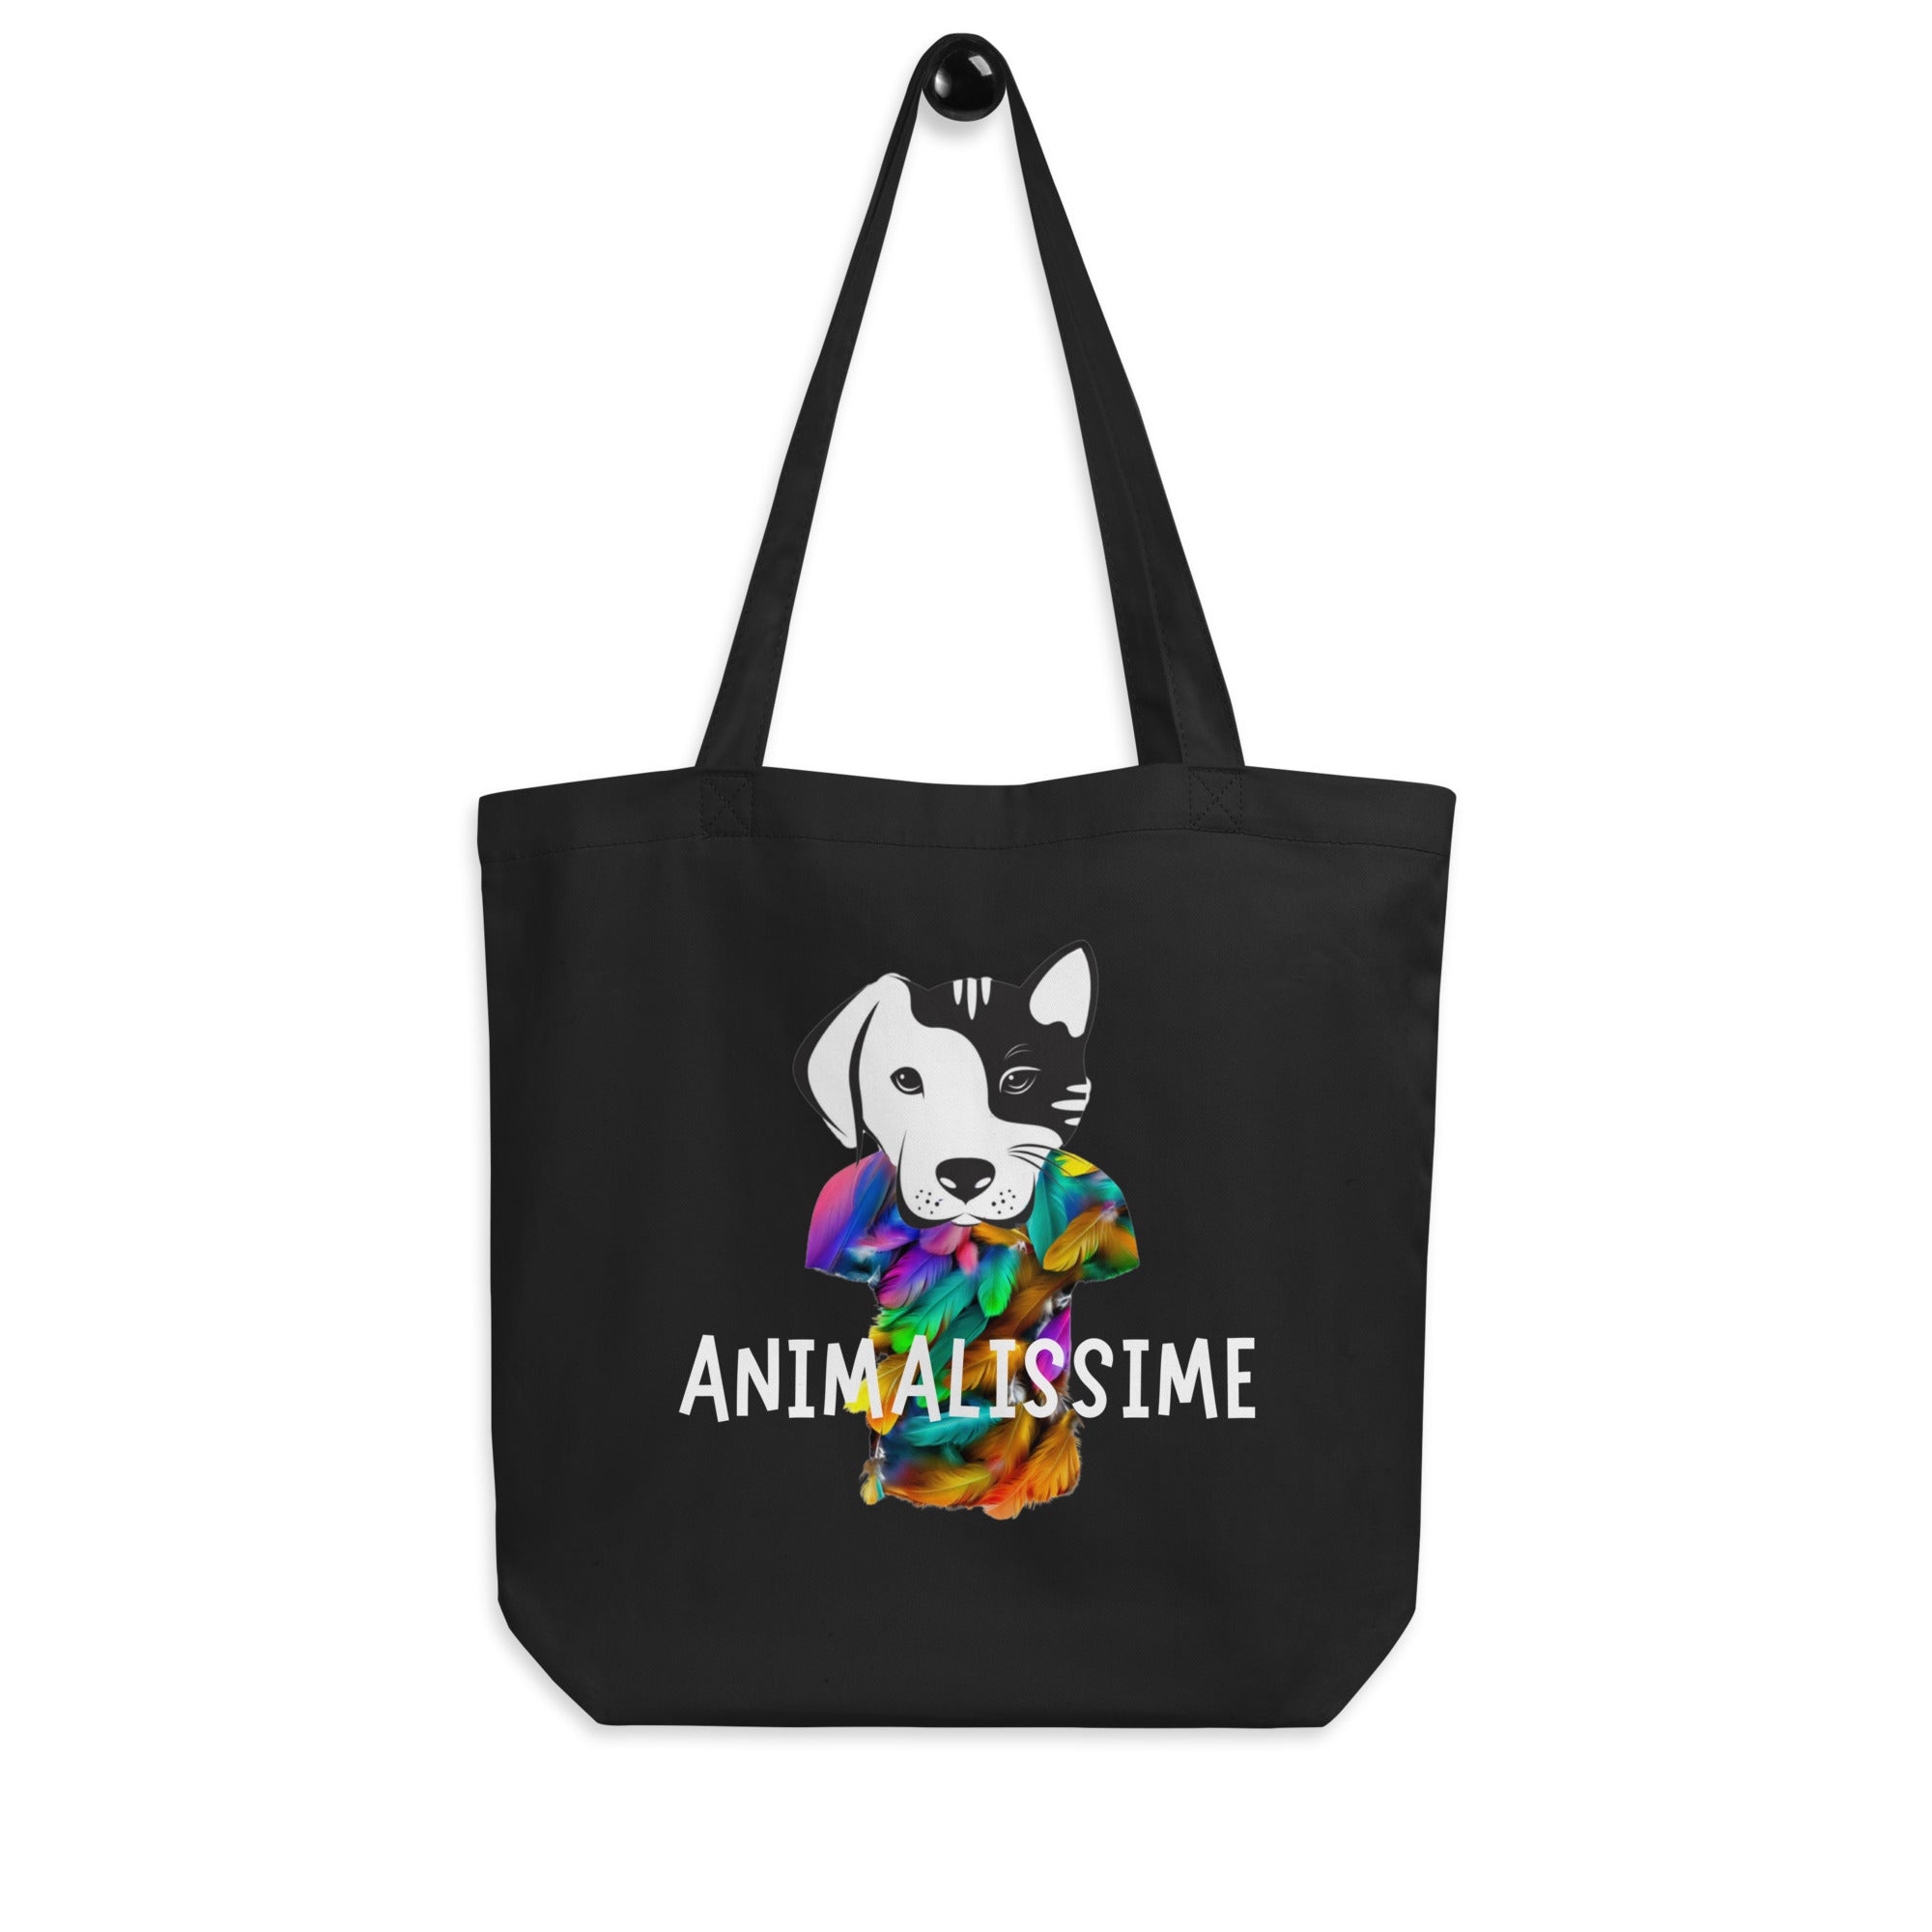 Animalissime - Tote Bag